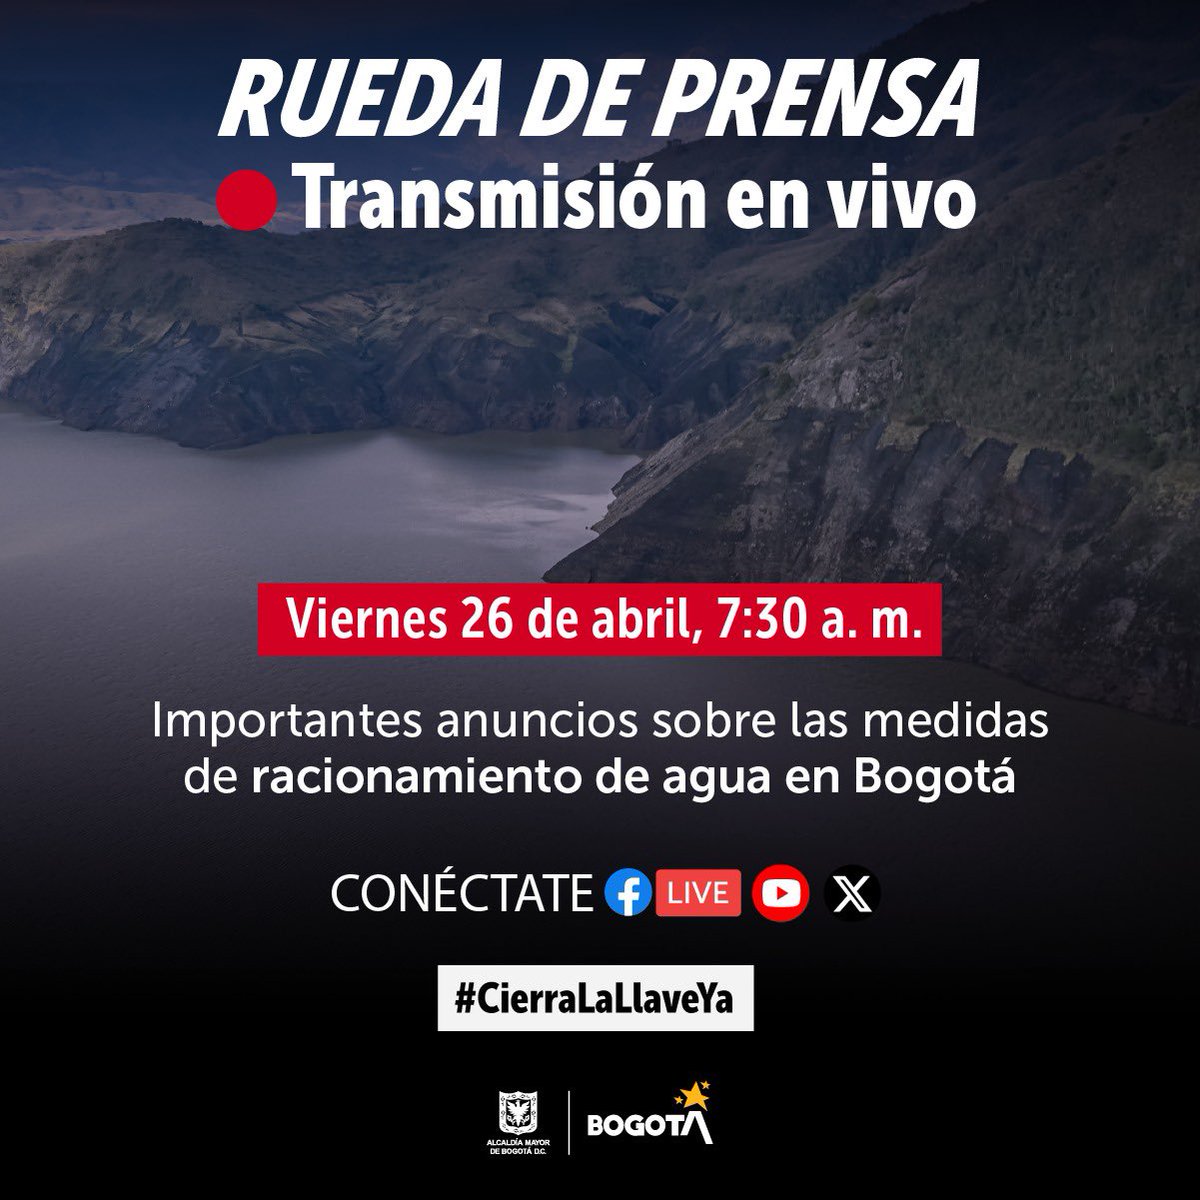 #Conéctate 🔴 Mañana a las 7:30 a.m., sigue la transmisión en vivo y entérate de cómo vamos con las medidas de racionamiento de agua. #CierraLaLlaveYa